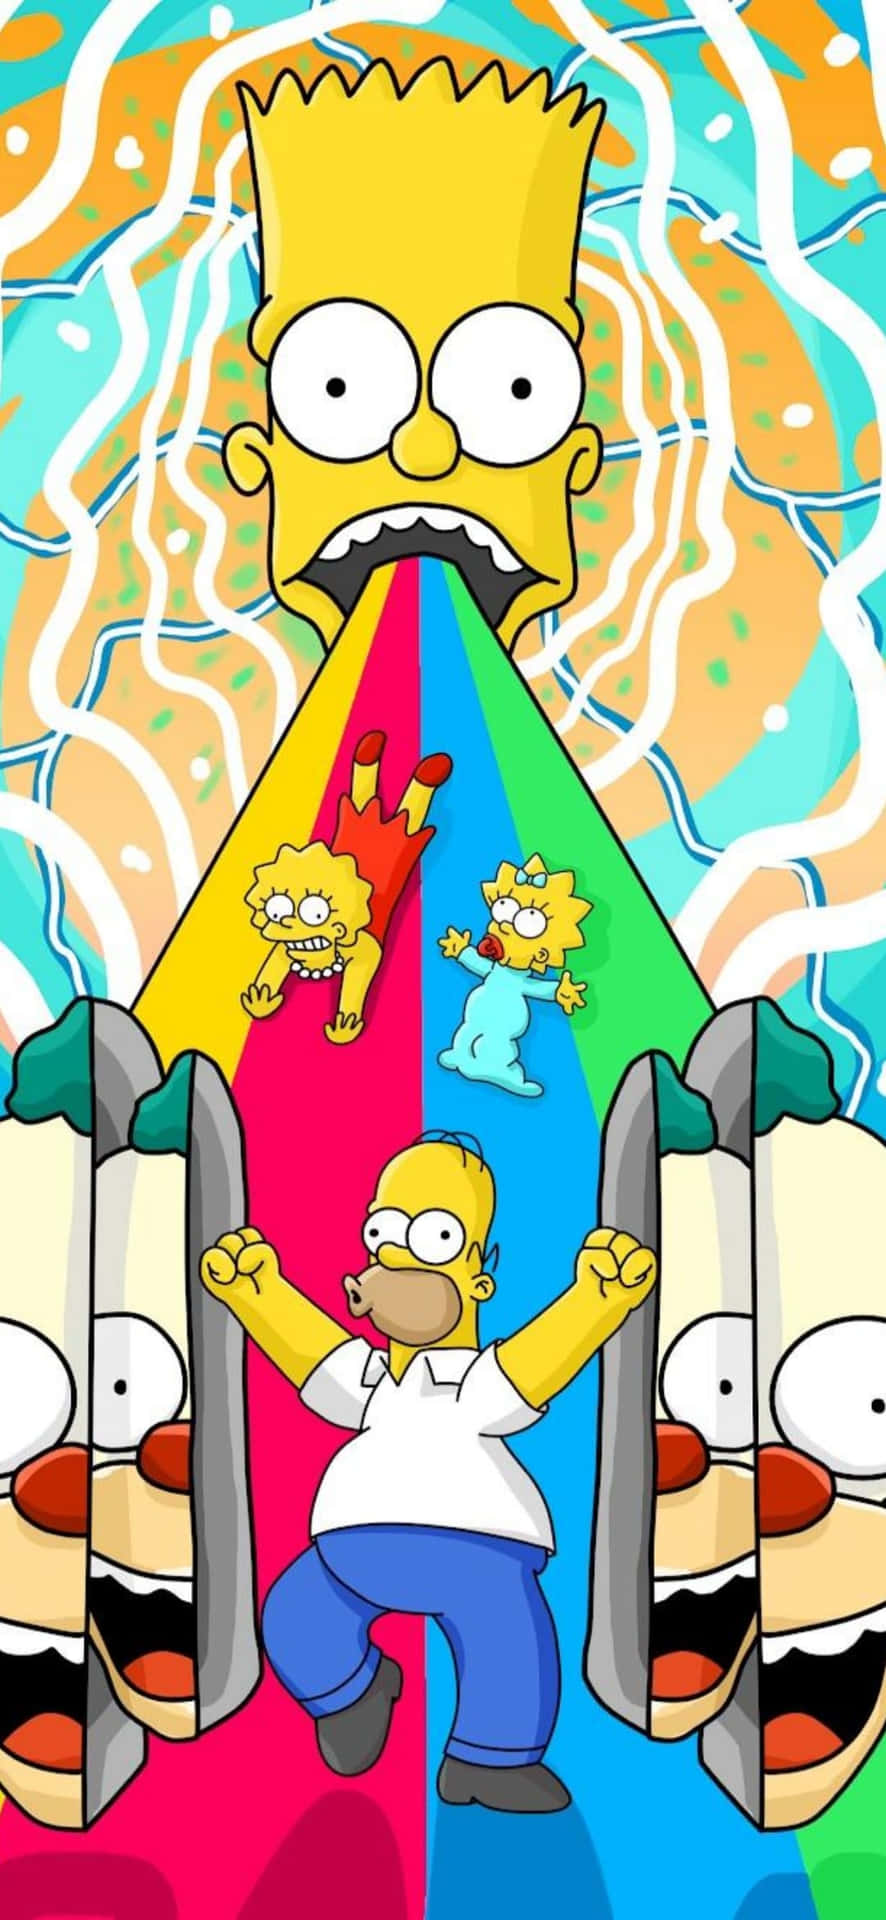 Deter Altid Tid Til Sjov Med The Simpsons.